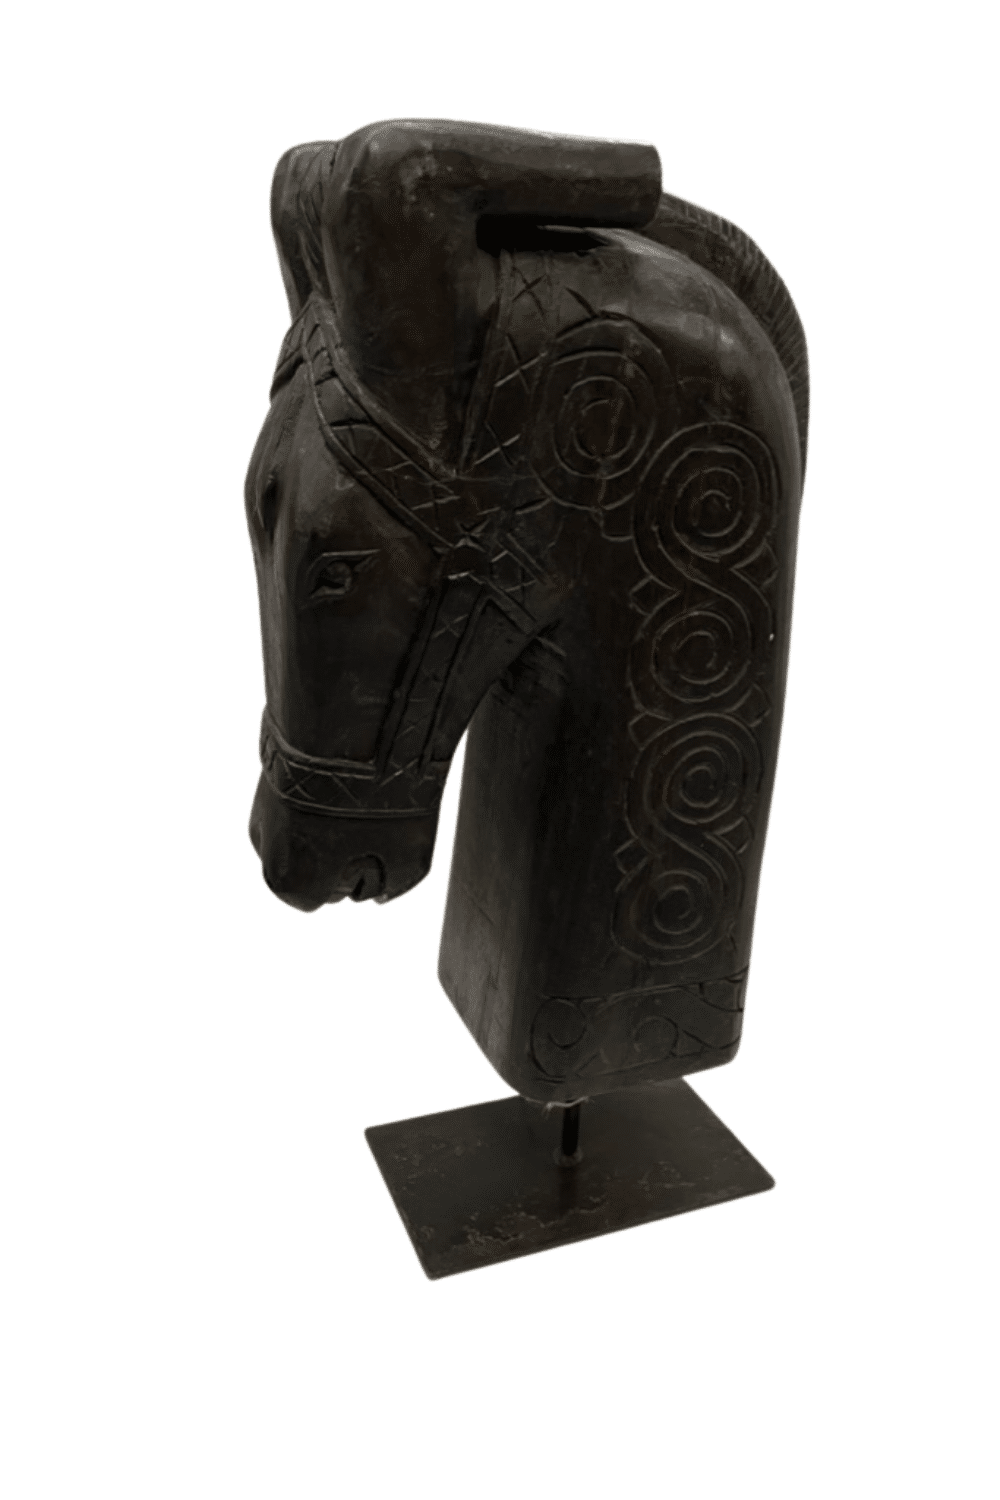 Zwart paarden hoofd op statief decoratie voor in een raamkozijn